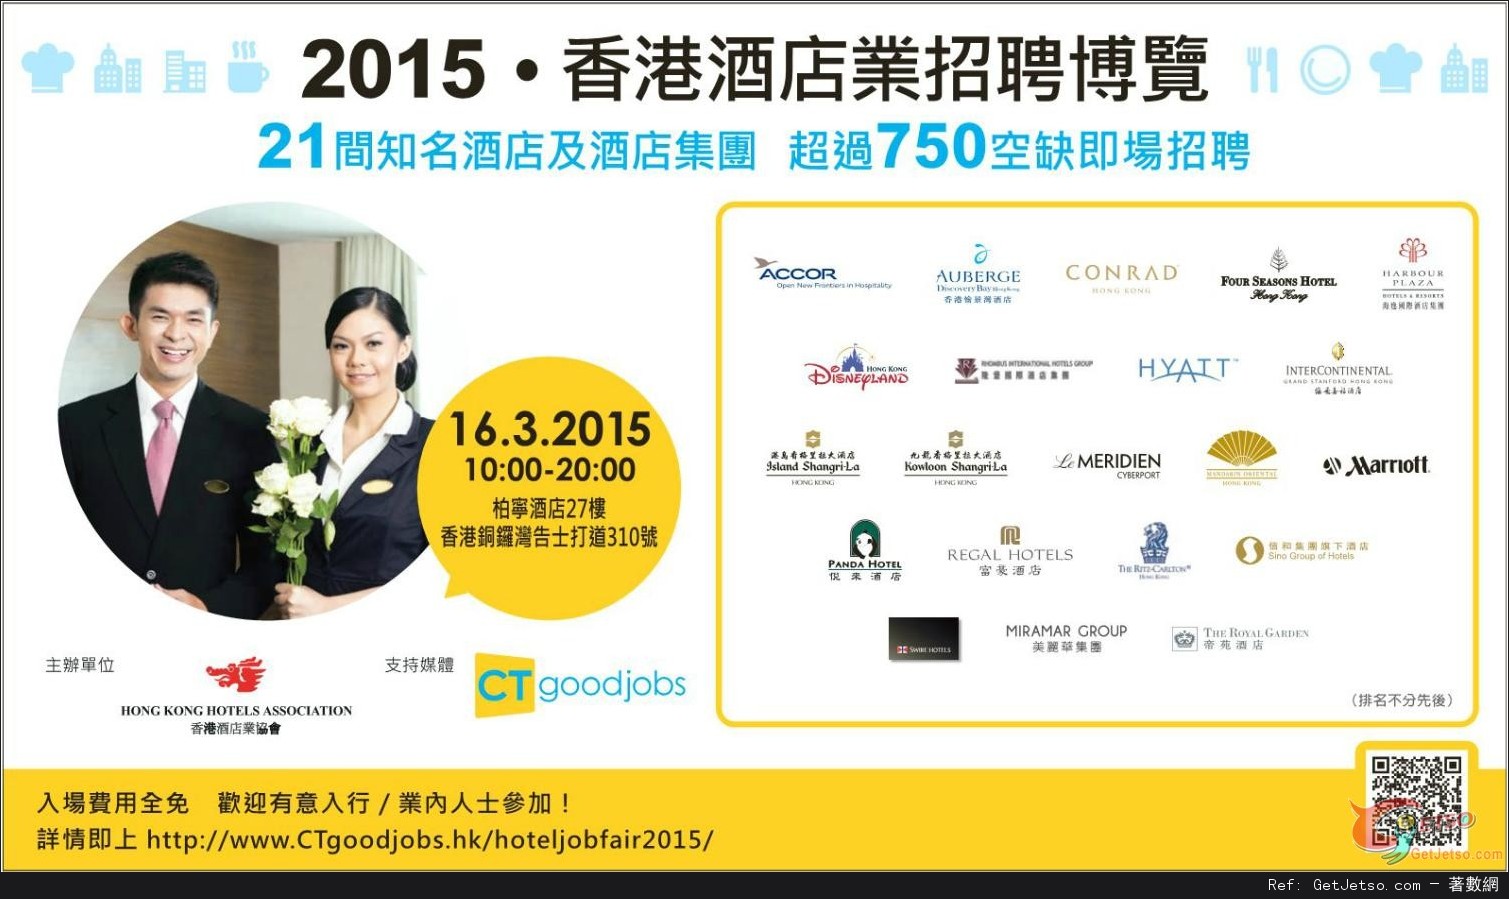 2014‧香港酒店業招聘博覽(15年3月16日)圖片1